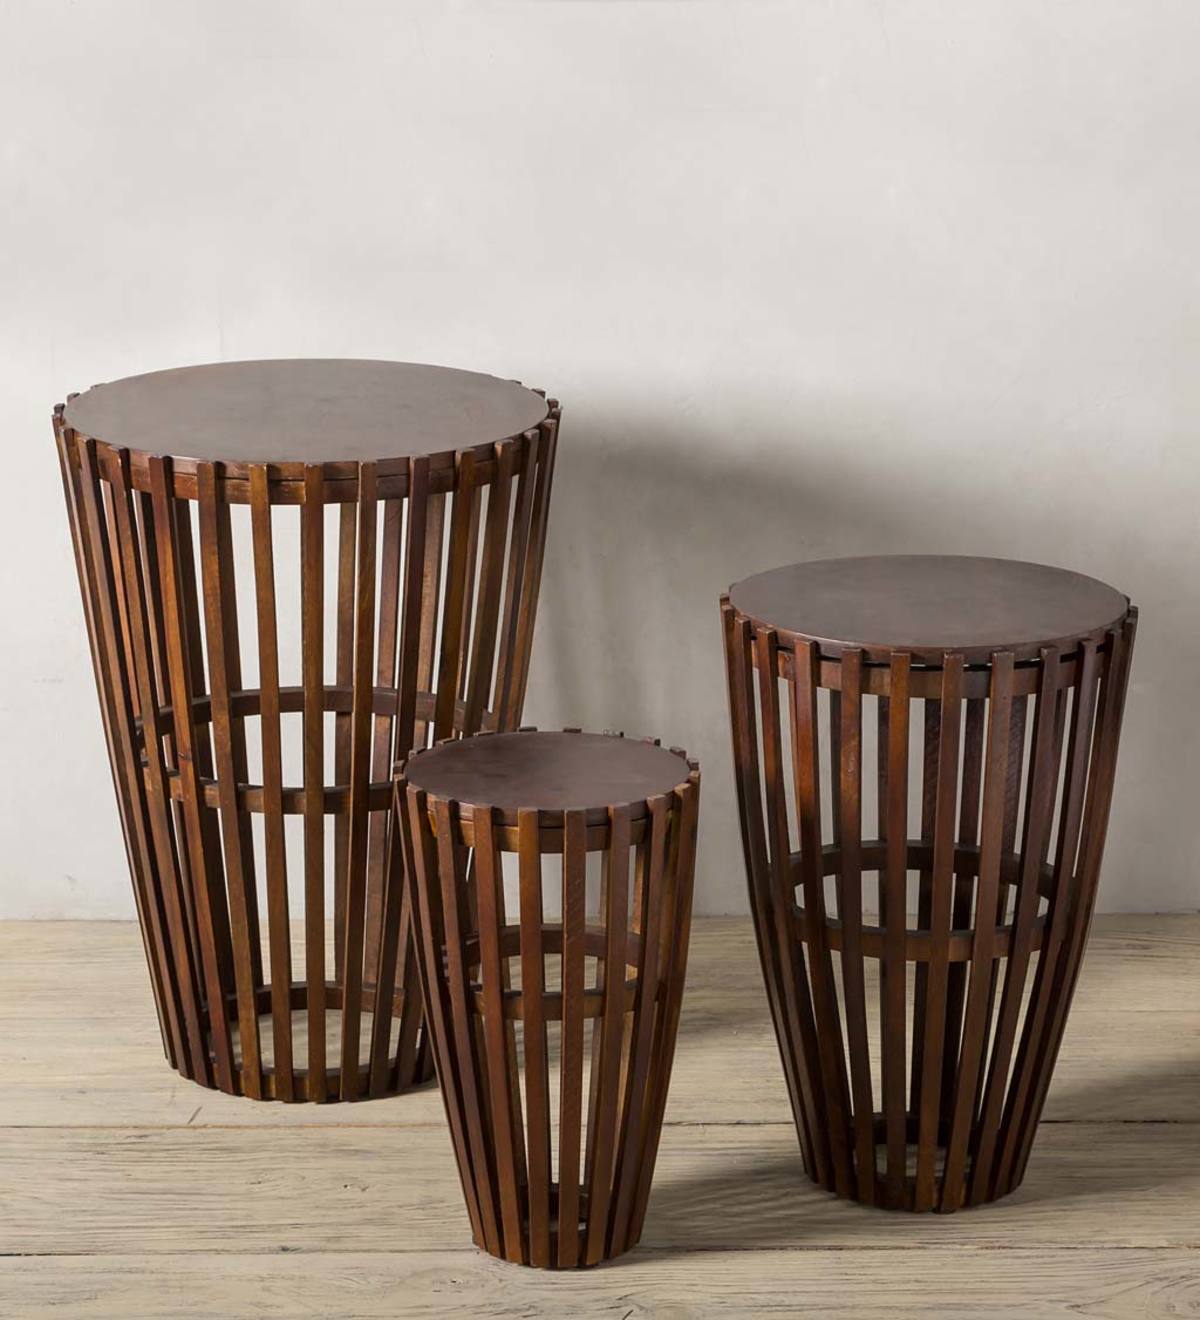 Nesting Wooden Drum Table Set - Dark Finish | VivaTerra